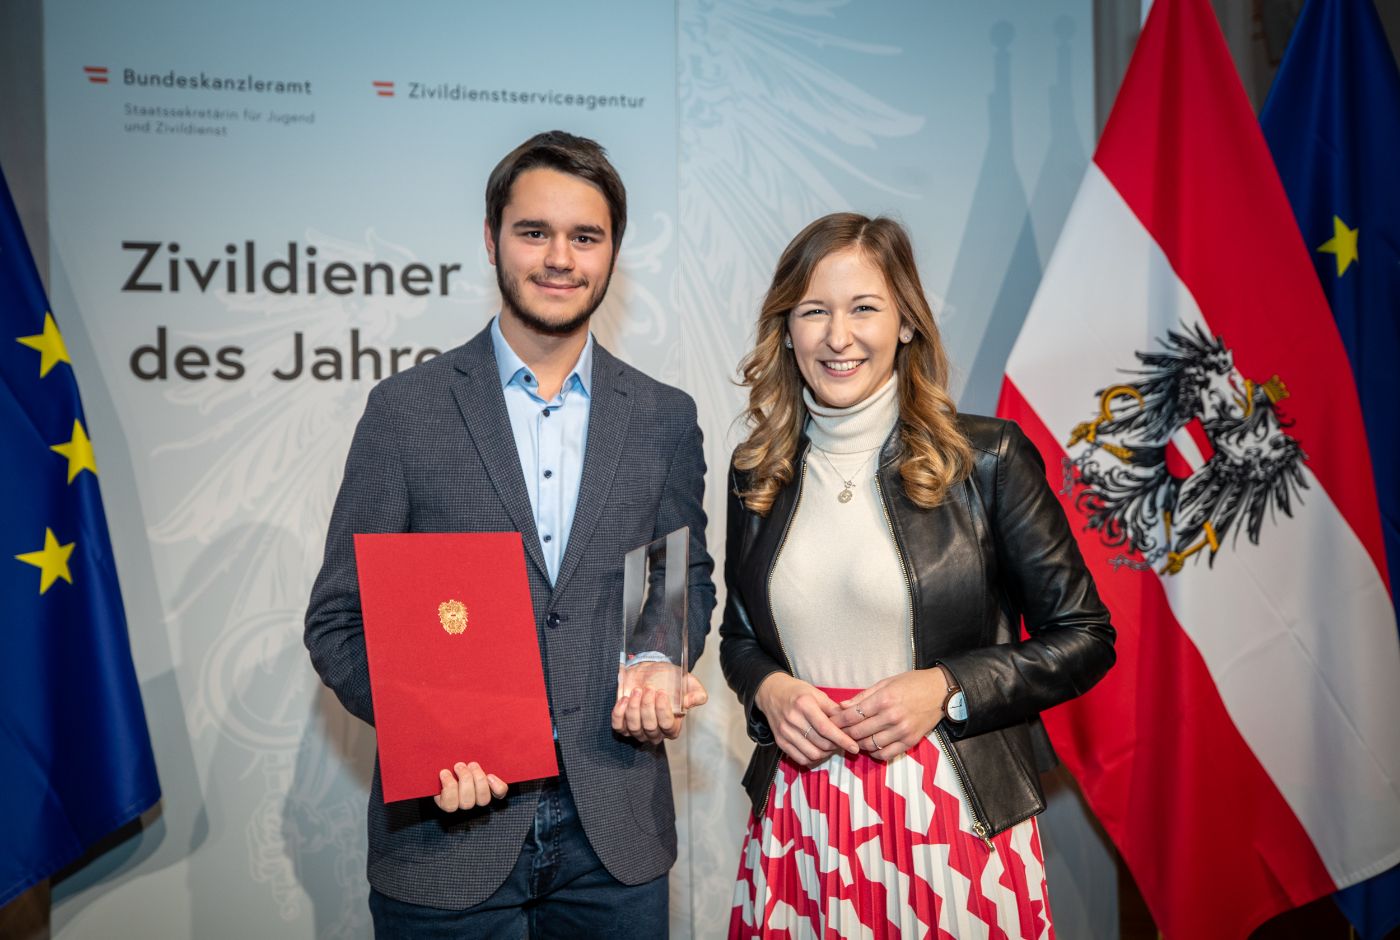 Zivildiener des Jahres 2022, Landessieger Vorarlberg, der zugleich auch der Bundessieger ist, und Staatssekretärin Claudia Plakolm